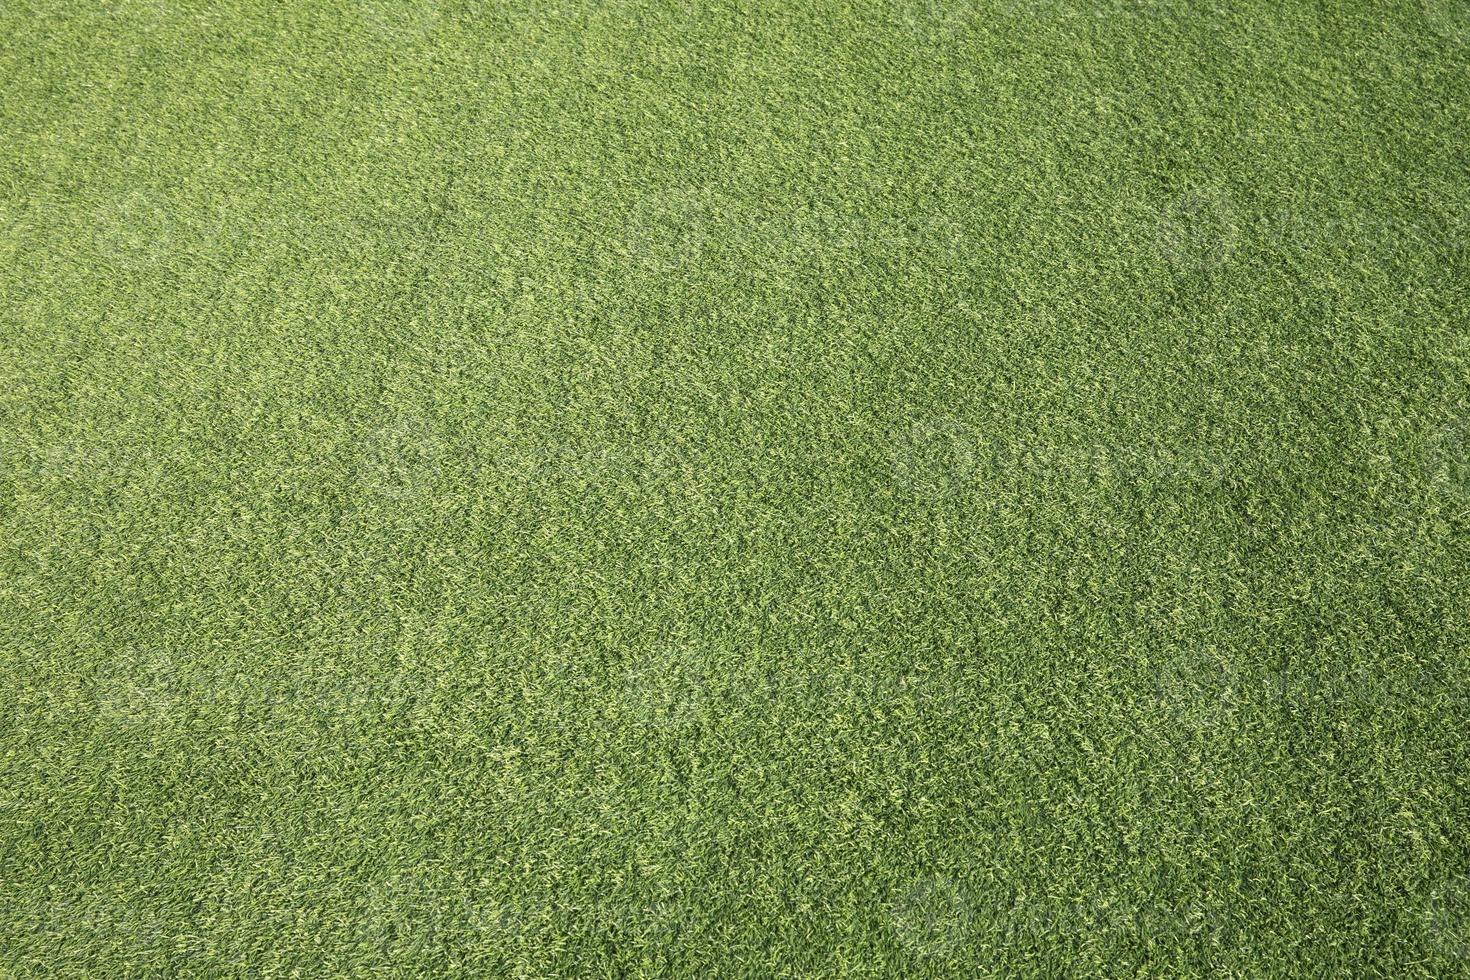 Green grass texture background. Green artificial grass. photo